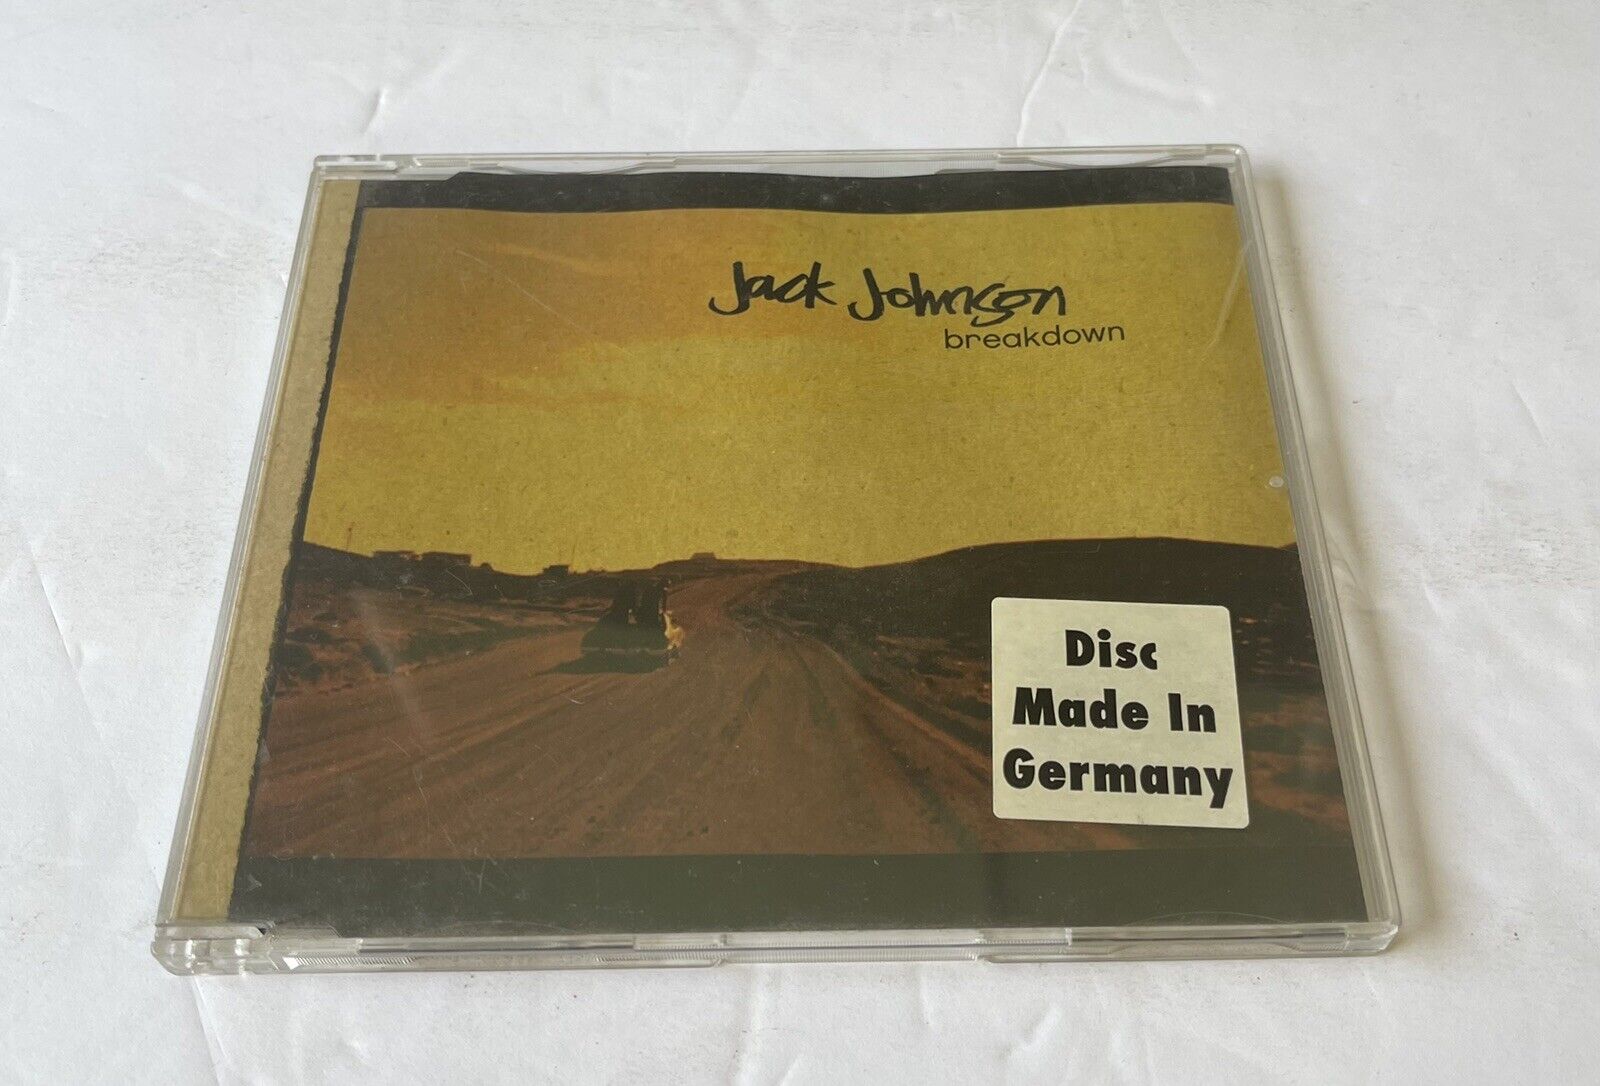 Breakdown EP by Jack Johnson CD German Import 2005